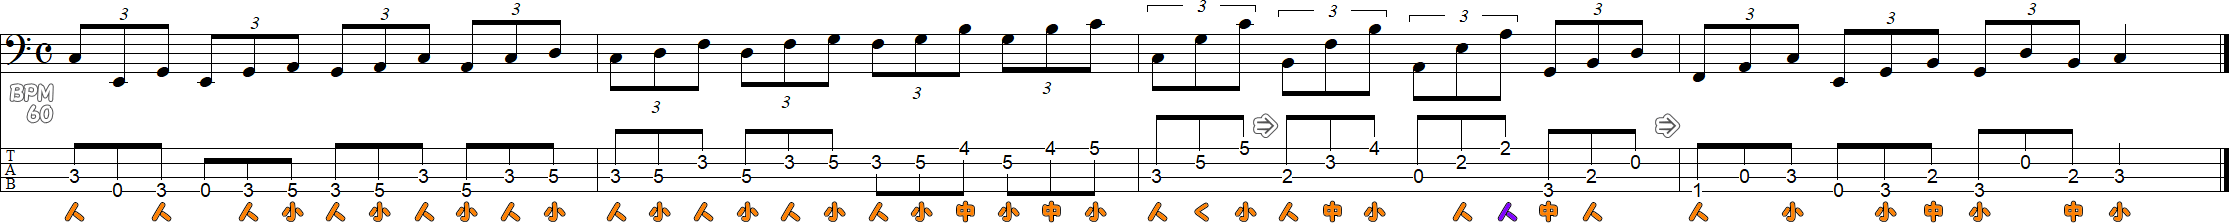 1拍3連符のスケール練習譜面1